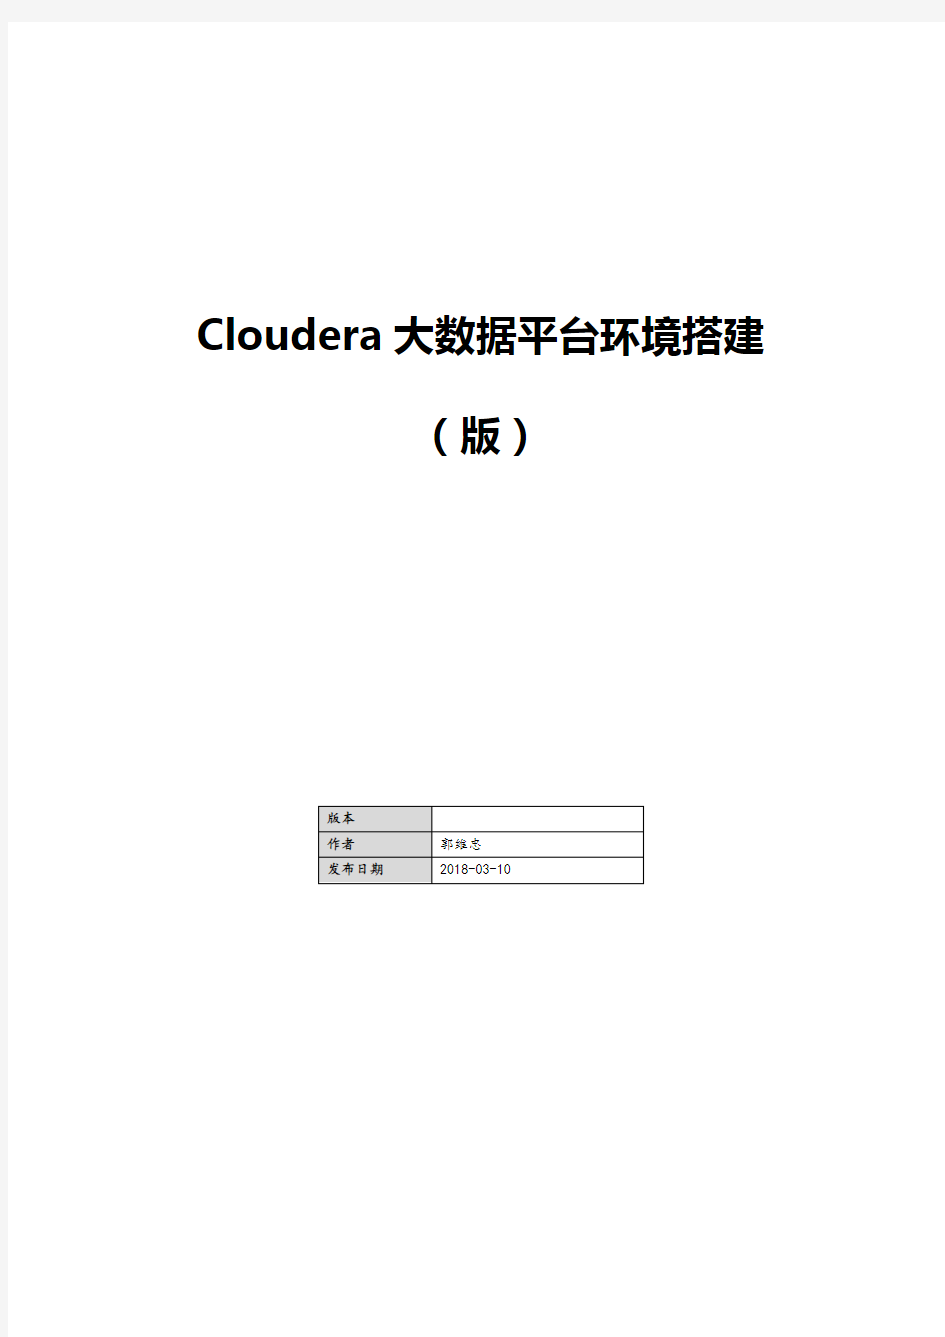 Cloudera大数据平台环境搭建(CDH5.13.1)傻瓜式说明书